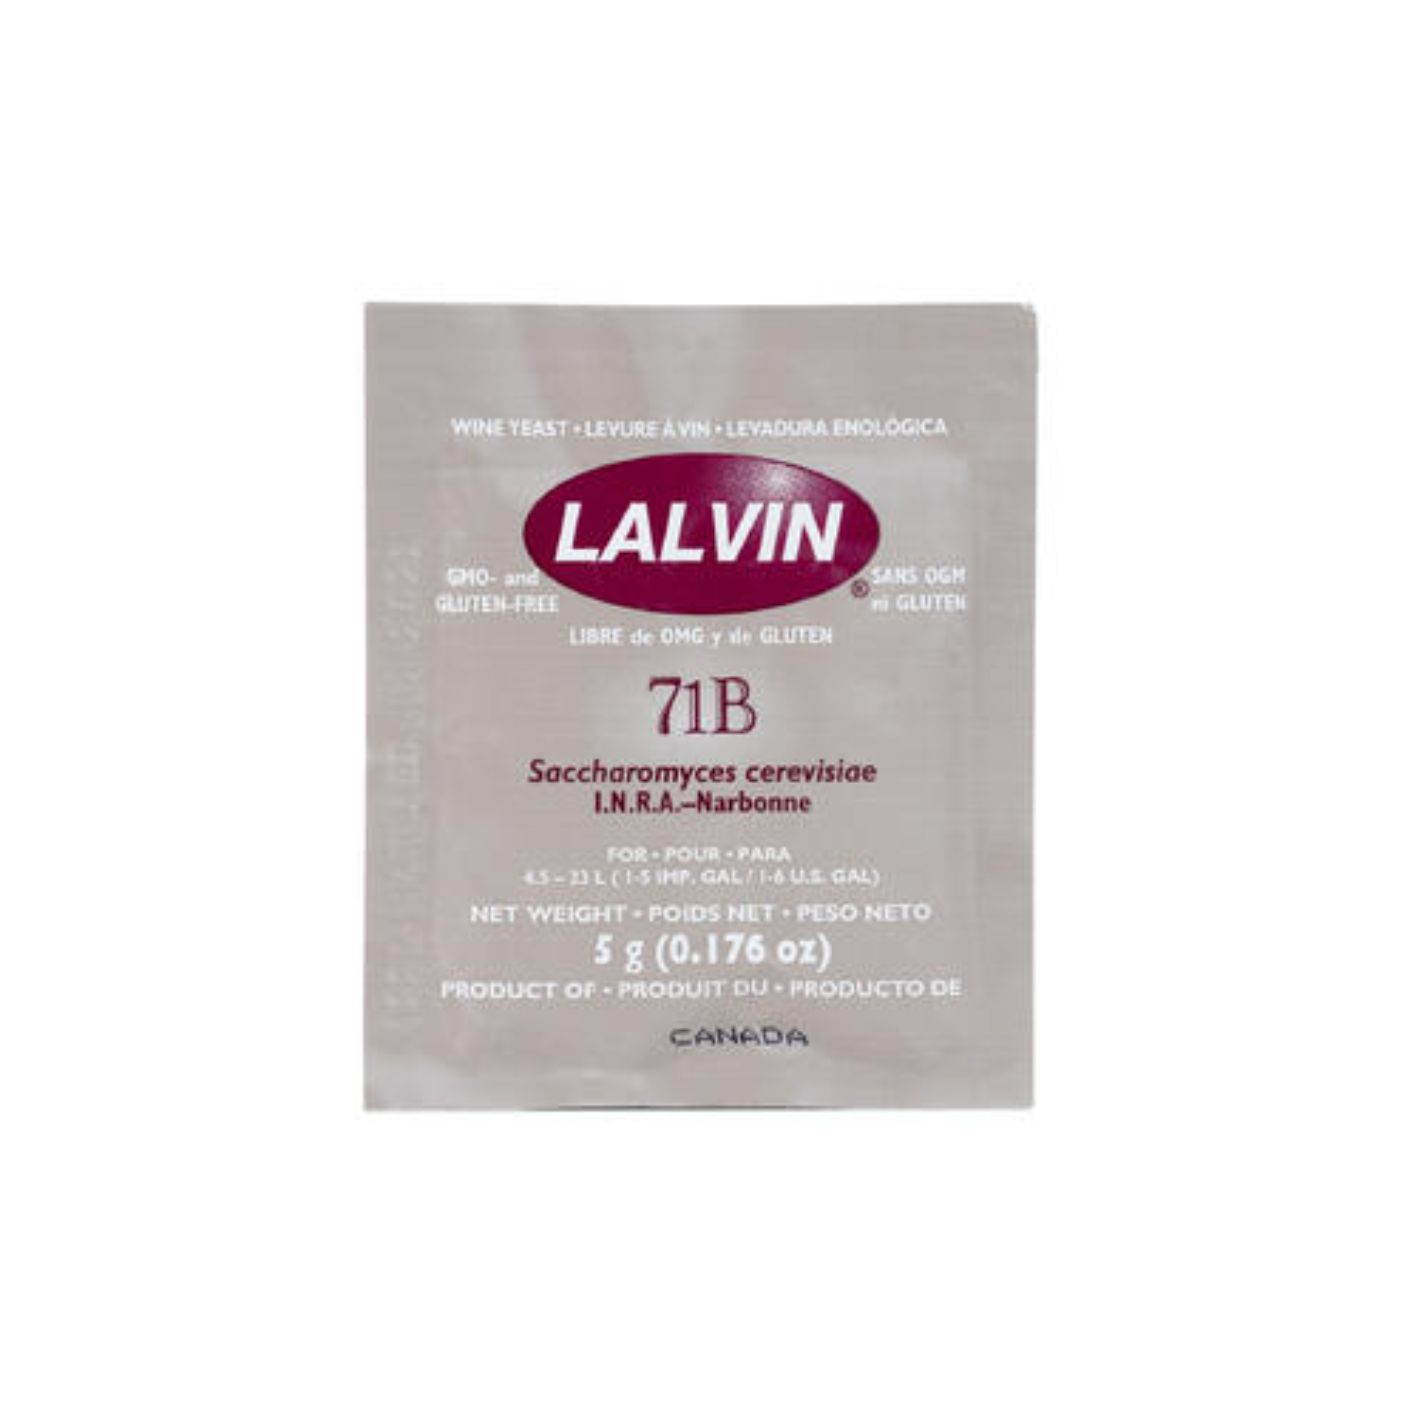 LALVIN 71B 5g for halvtørre hvitviner